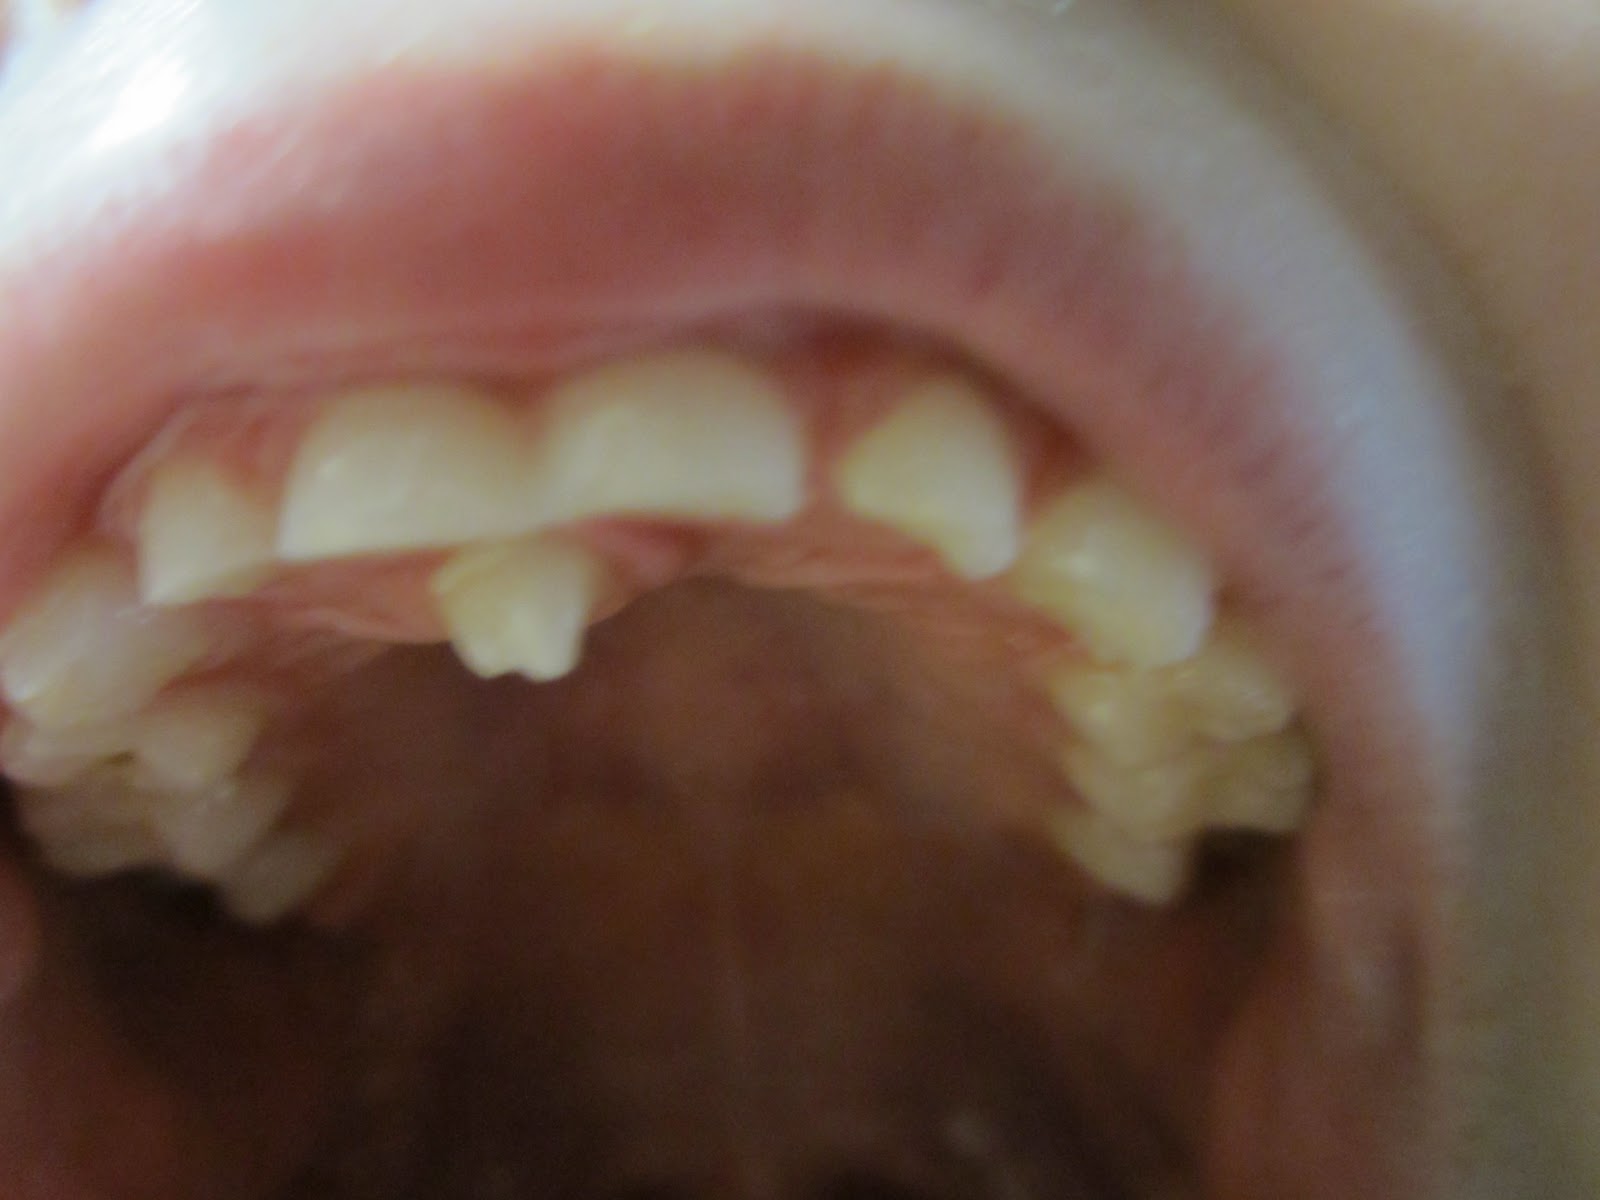 Adult Teeth Growing Behind Baby Teeth 98